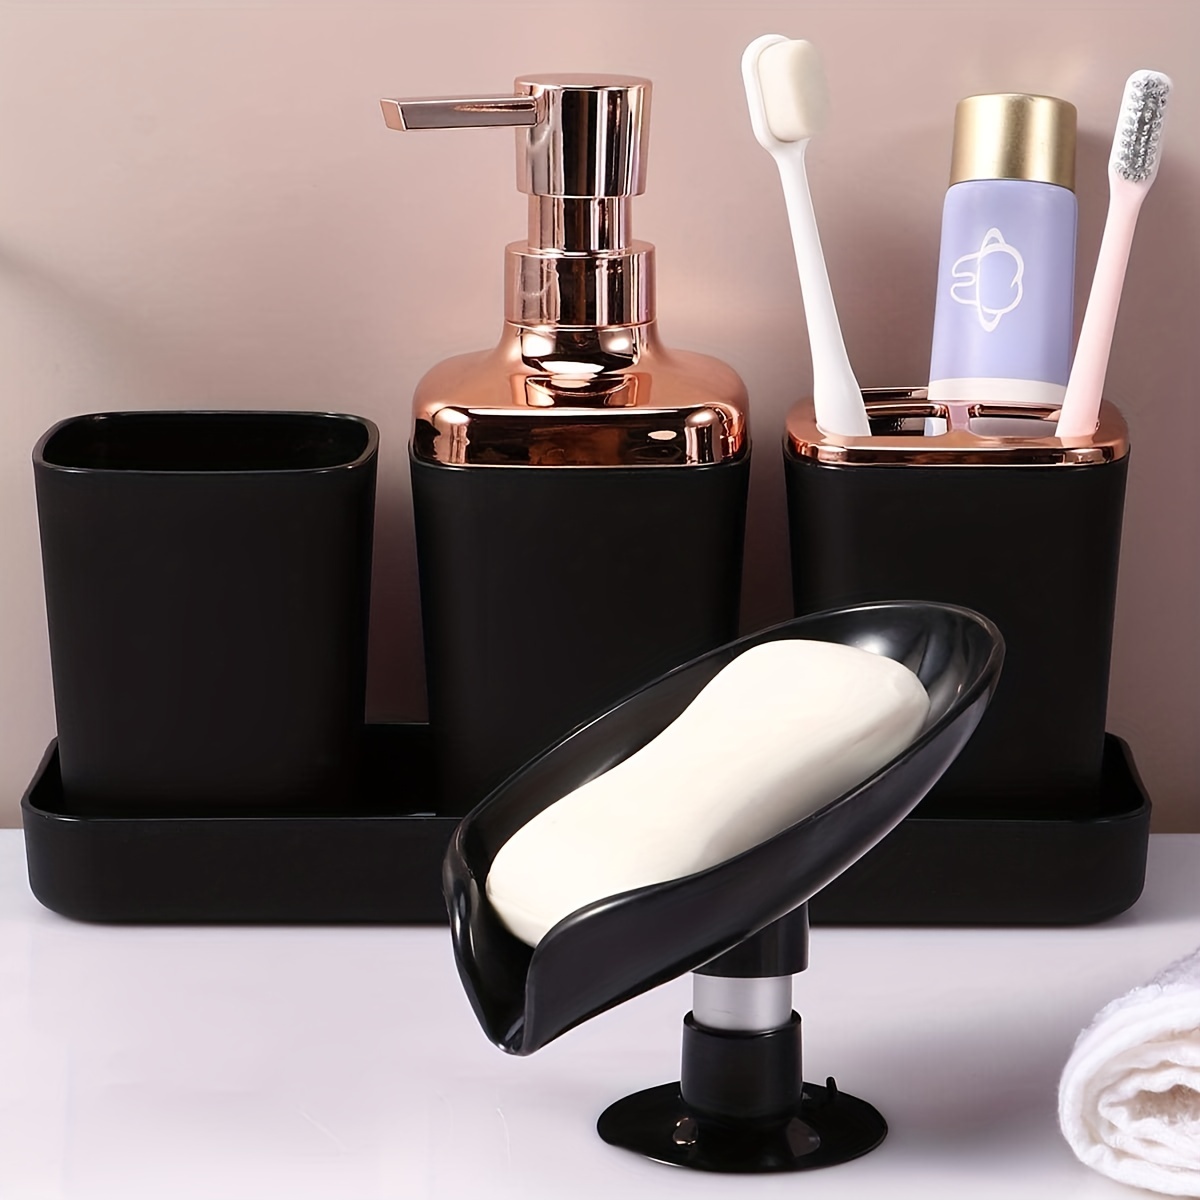  AWJ Dispensador de jabón para baño de 5 piezas de accesorios de  baño, juego de decoración de baño, incluye dispensador de jabón, soporte  para cepillo de dientes, vaso, jabonera, boda, inauguración